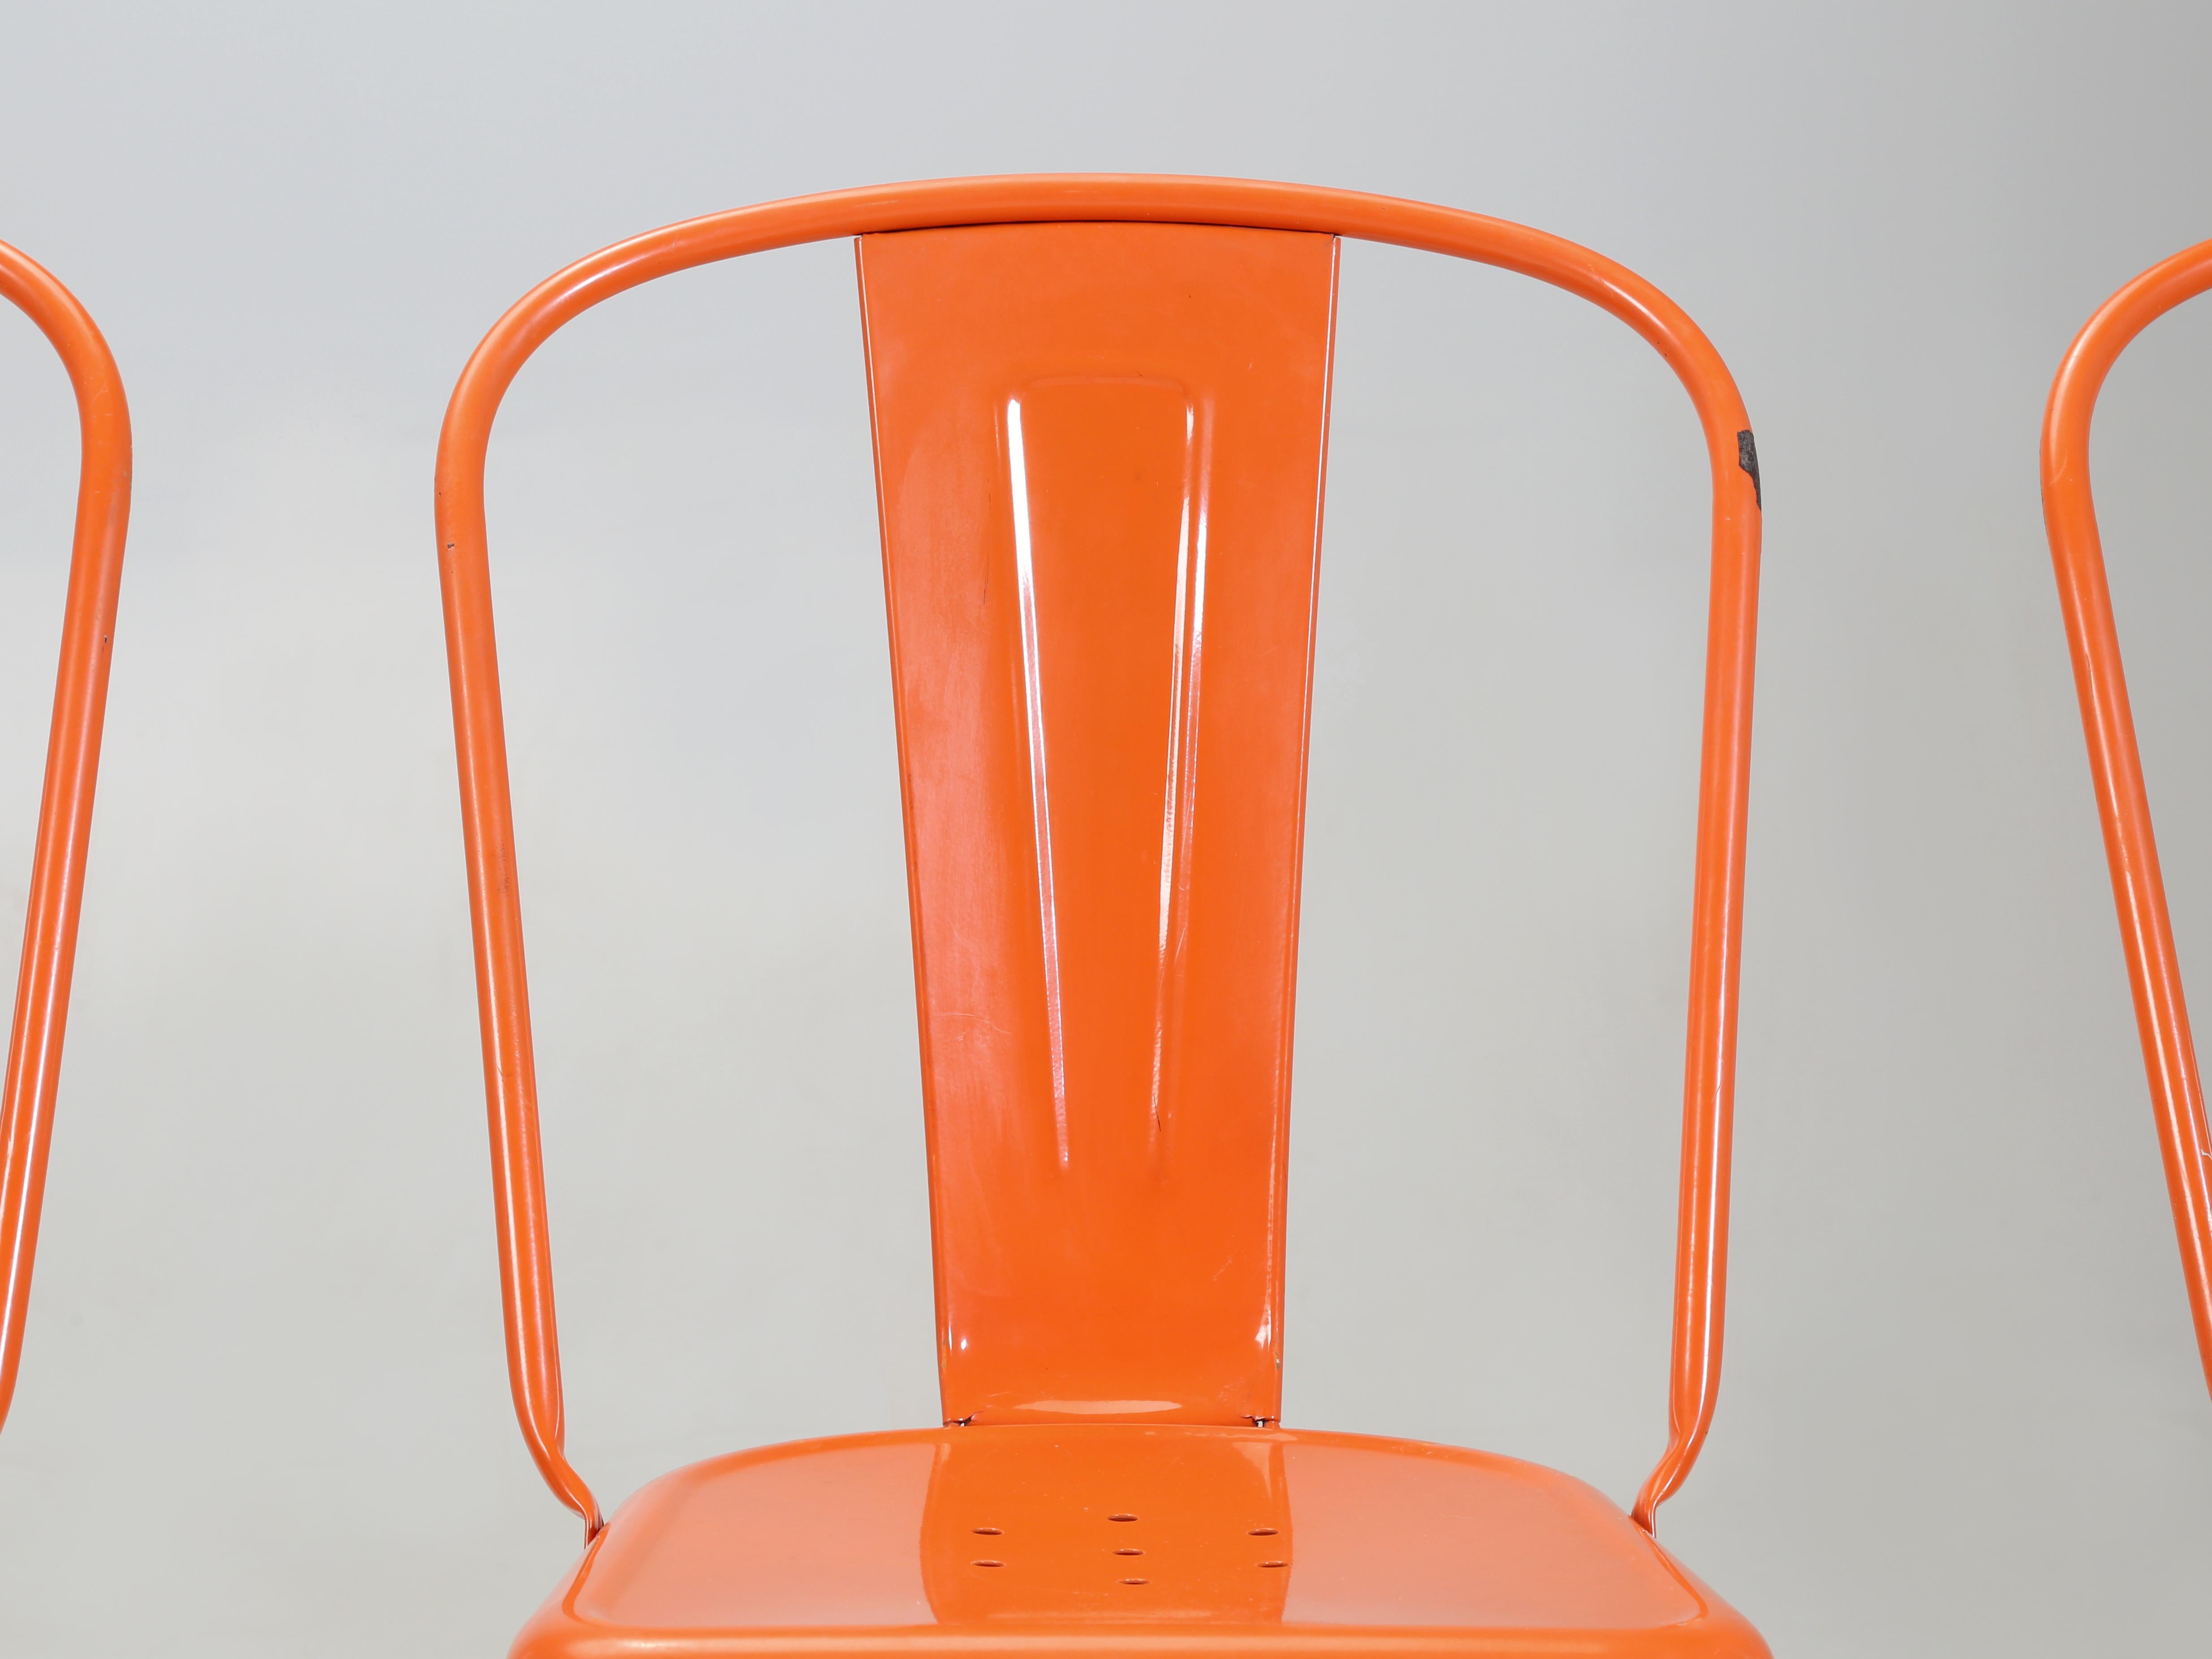 Echte Französisch gemacht Vintage Satz von (6) Tolix Stahl Stapelstühle wahrscheinlich in den 1960er Jahren gemacht. Die Tolix-Stühle wurden so konzipiert, dass sie laut Hersteller sicher (12) übereinander gestapelt werden können. Wir haben derzeit